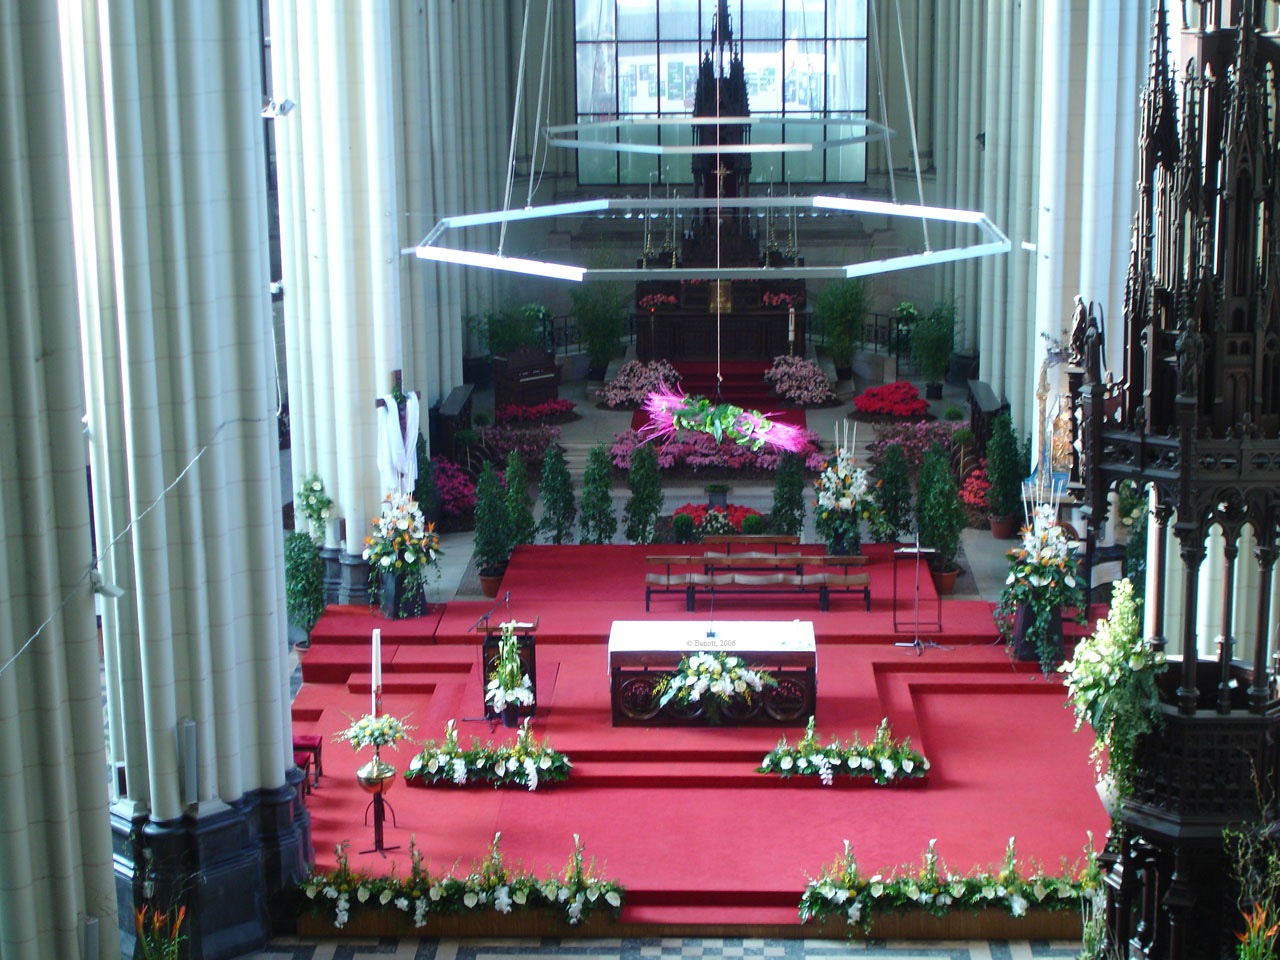 Eglise en Fleurs (dition 2006)